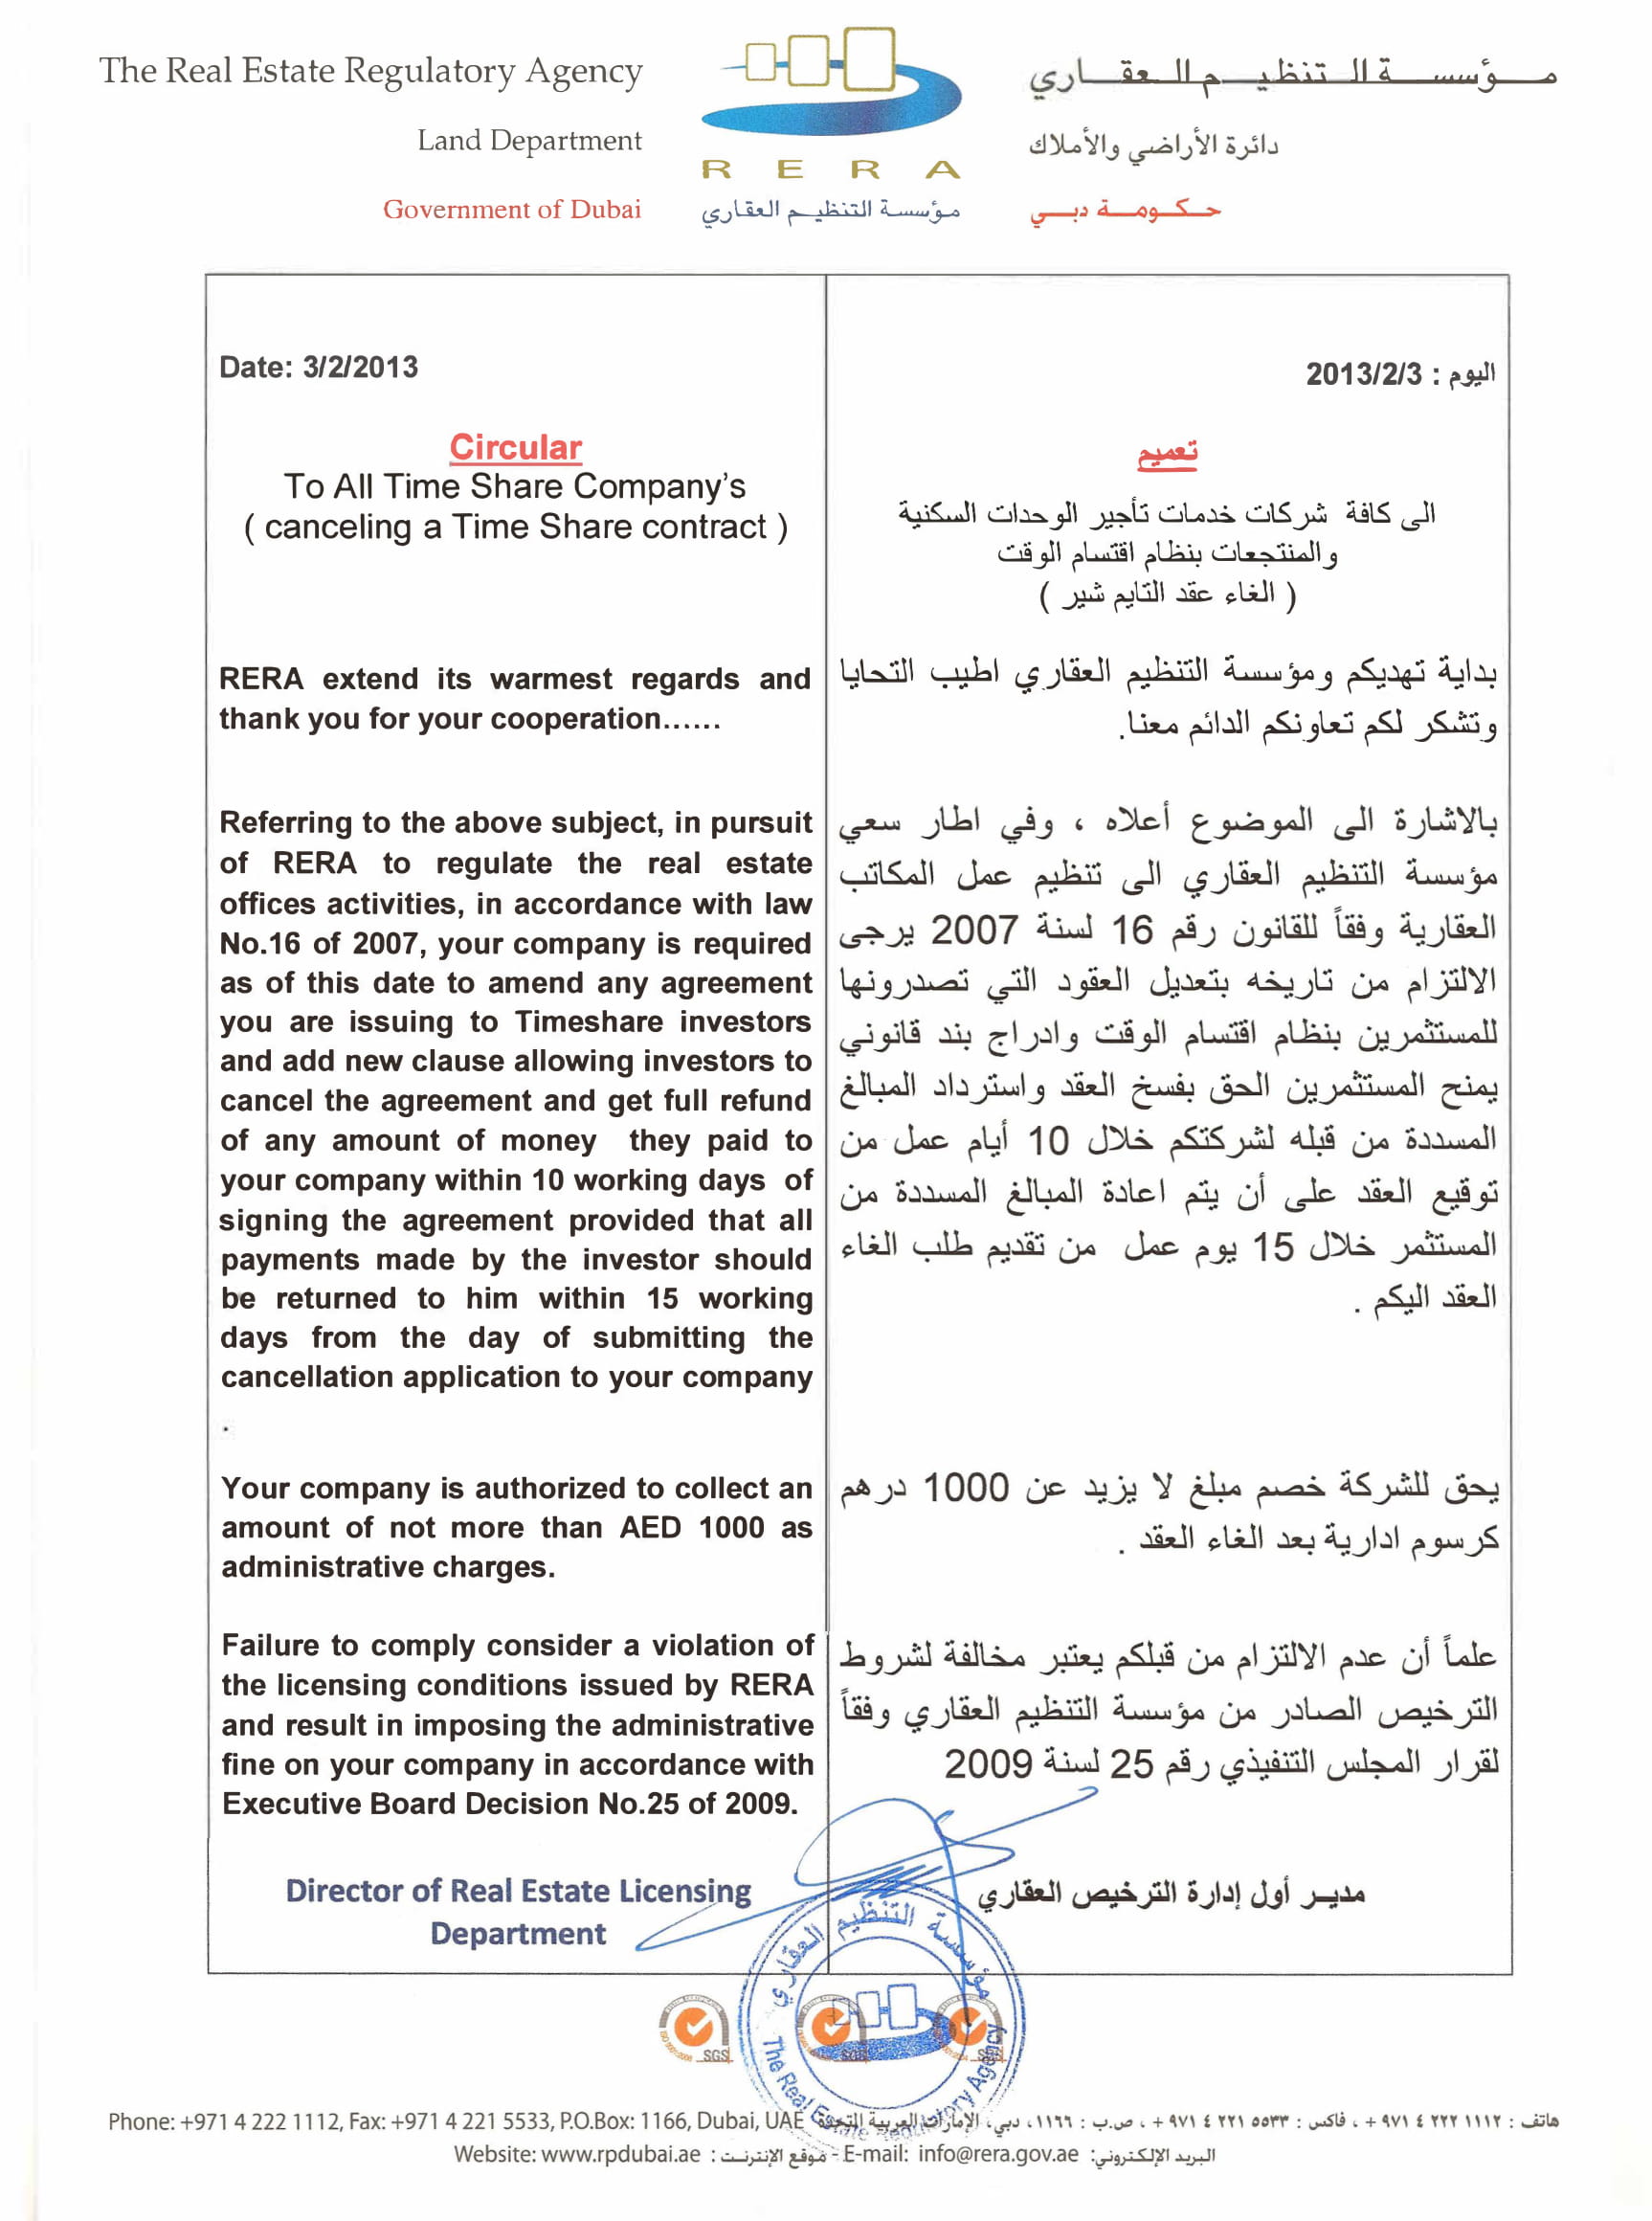 Dubai Land Department - Anti-Money Laundering (AML)